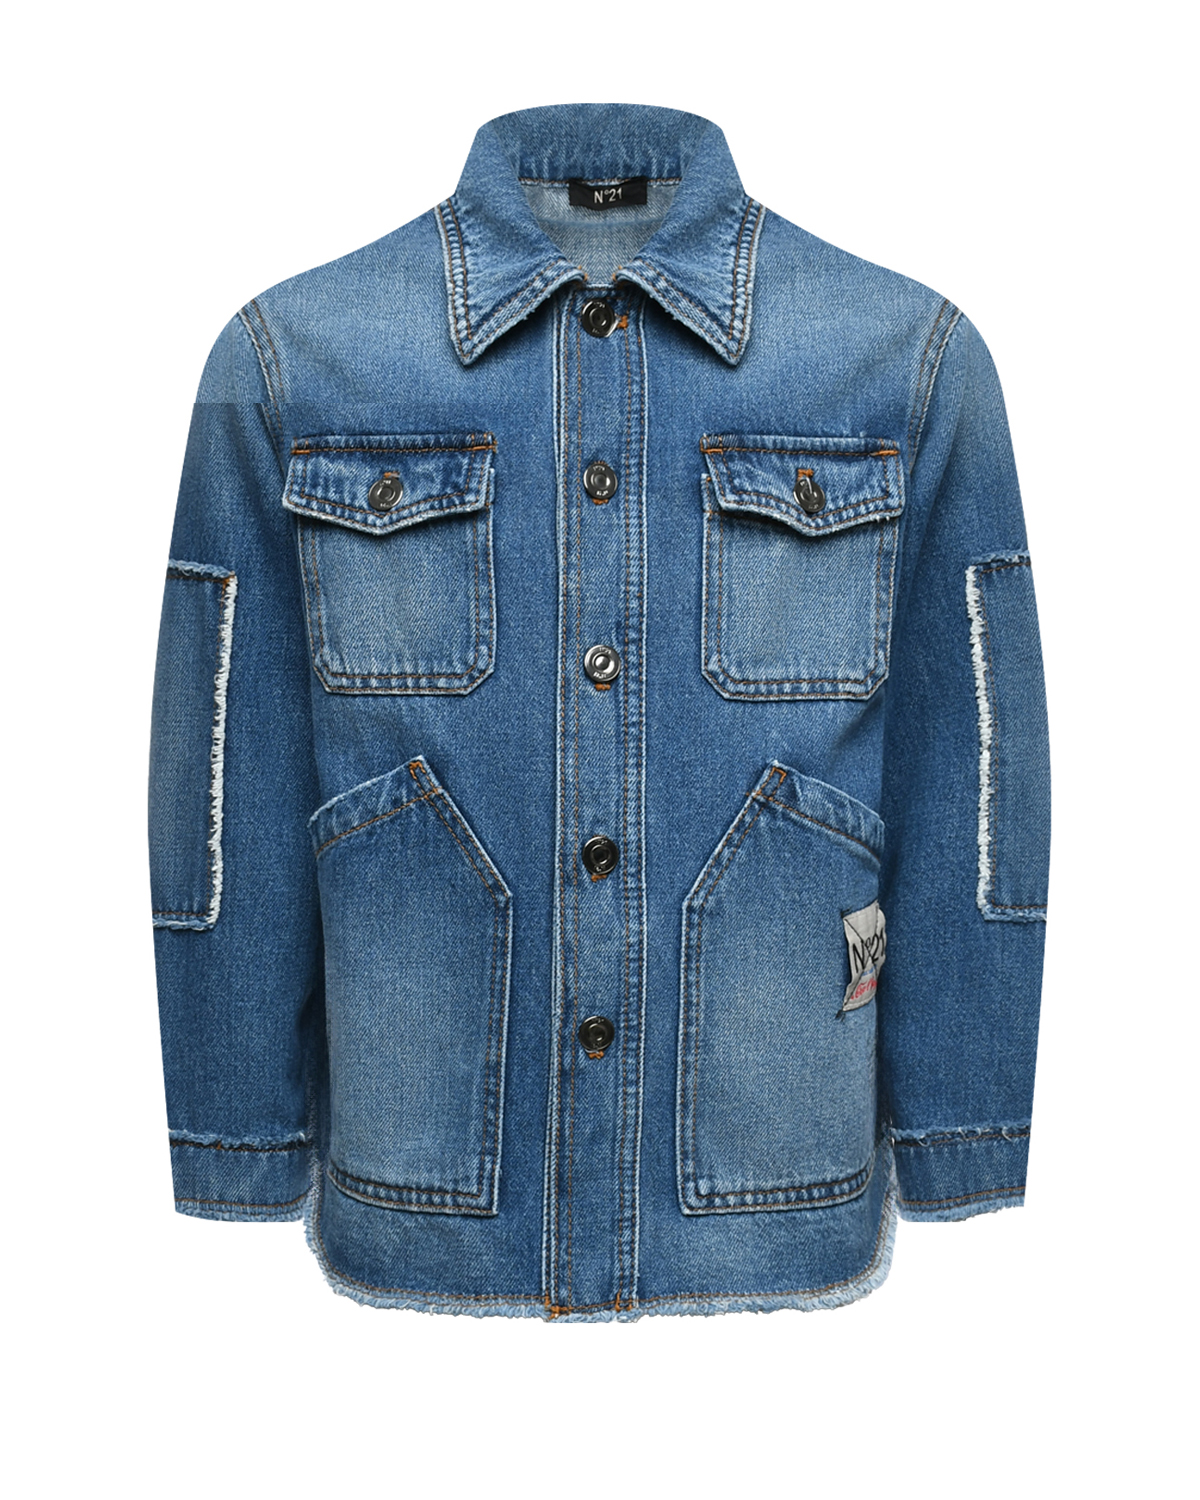 Выбеленная джинсовая куртка, синяя No. 21, размер 152, цвет синий